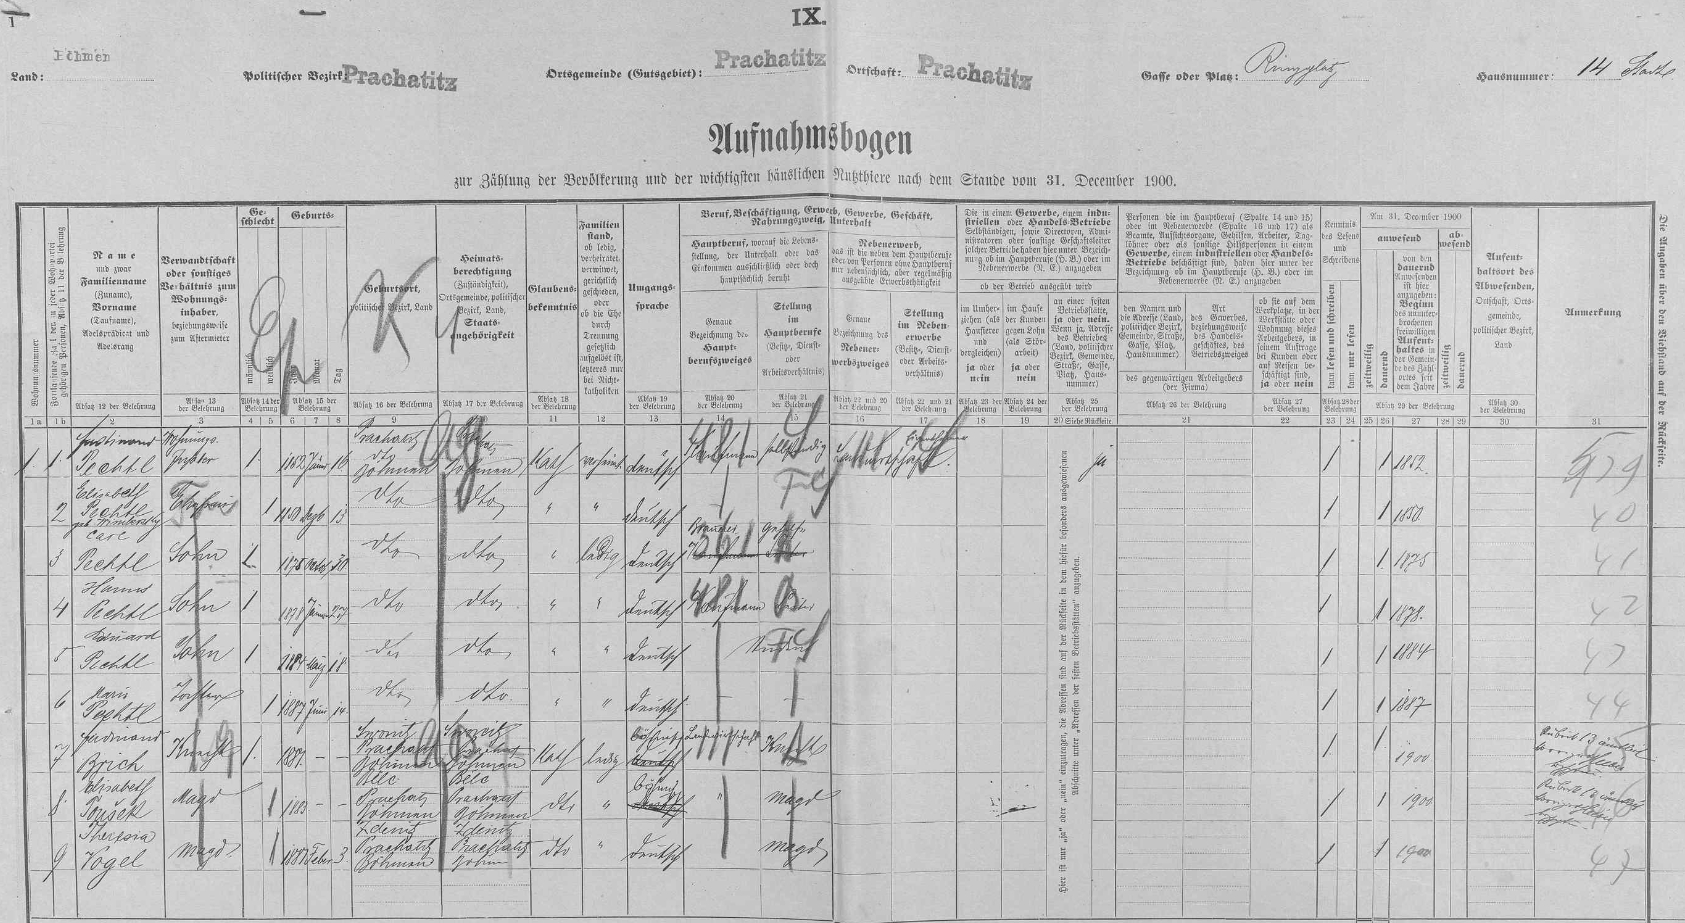 Na archu ze sčítání lidu z roku 1900 je zachycena v prachatickém domě čp. 14 rodina jeho děda Ferdinanda včetně Helmutova otce Karla